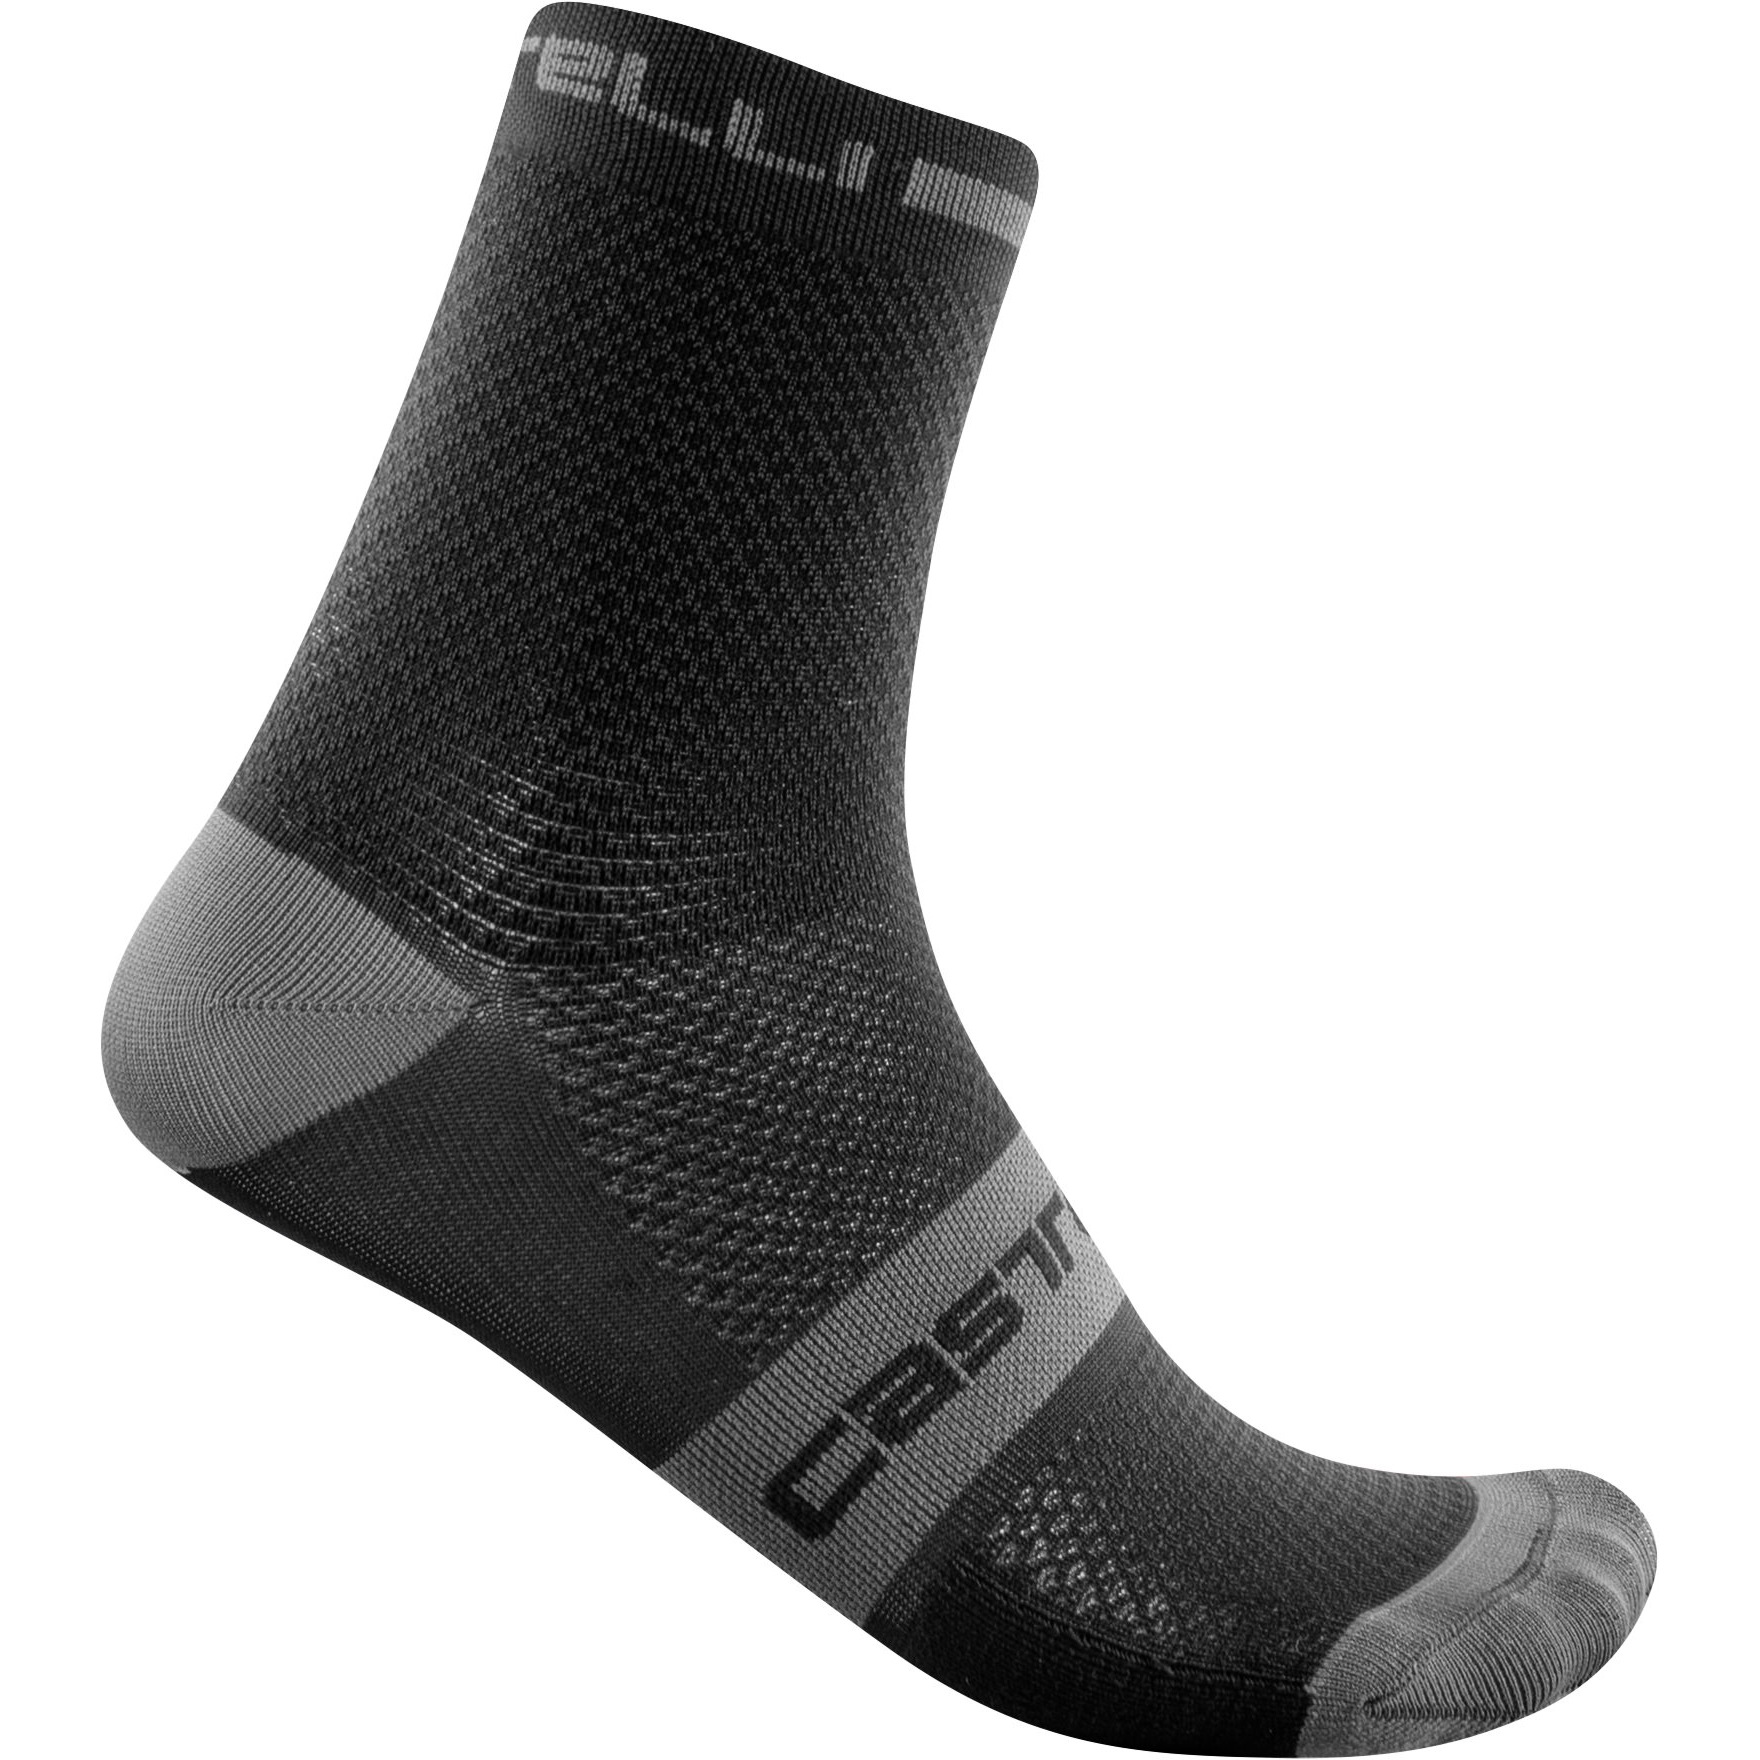 Produktbild von Castelli Superleggera T 12 Socken Herren - schwarz 010